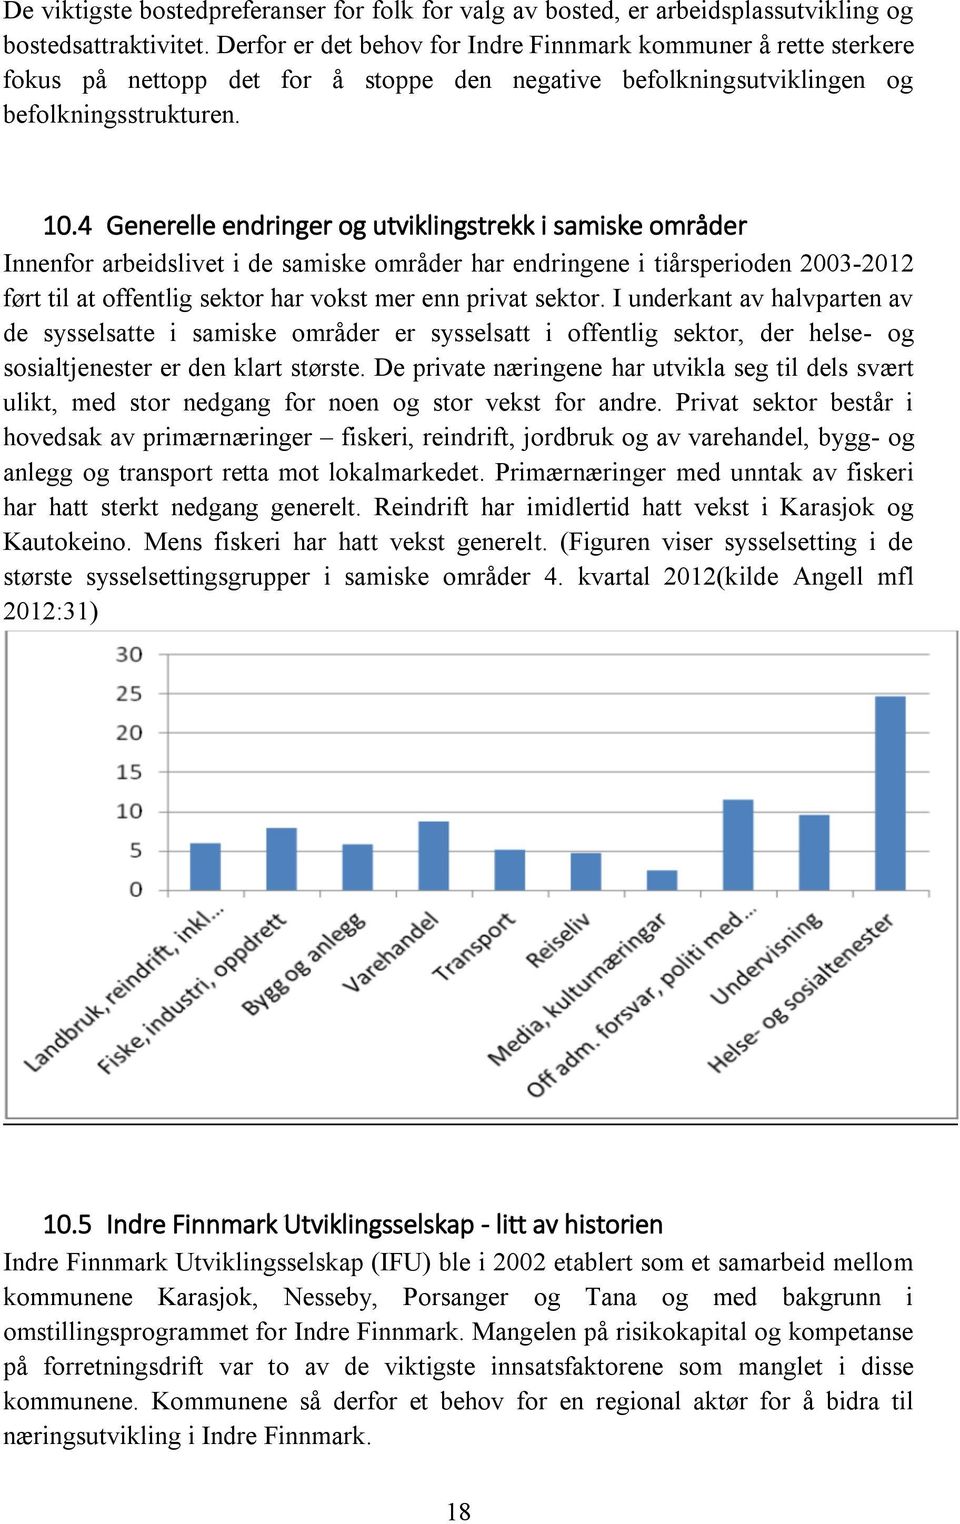 4 Generelle endringer og utviklingstrekk i samiske områder Innenfor arbeidslivet i de samiske områder har endringene i tiårsperioden 2003-2012 ført til at offentlig sektor har vokst mer enn privat